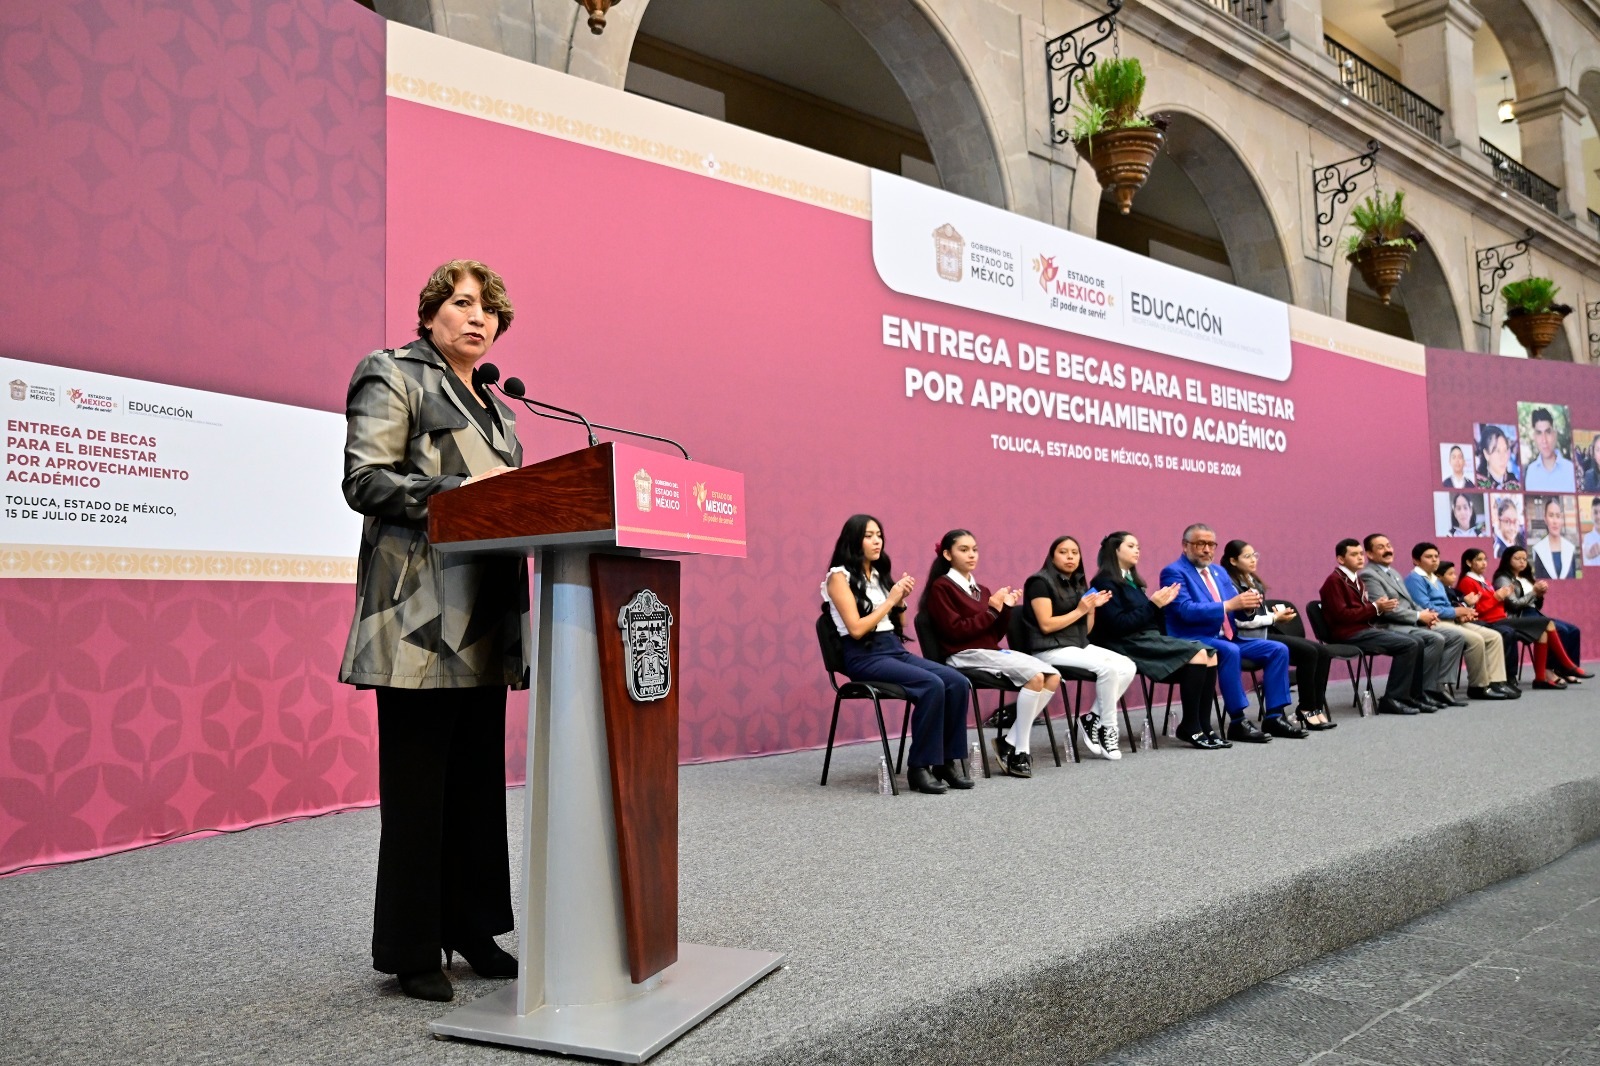 Delfina Gómez arranca programa de Becas para el Bienestar por Aprovechamiento Académico